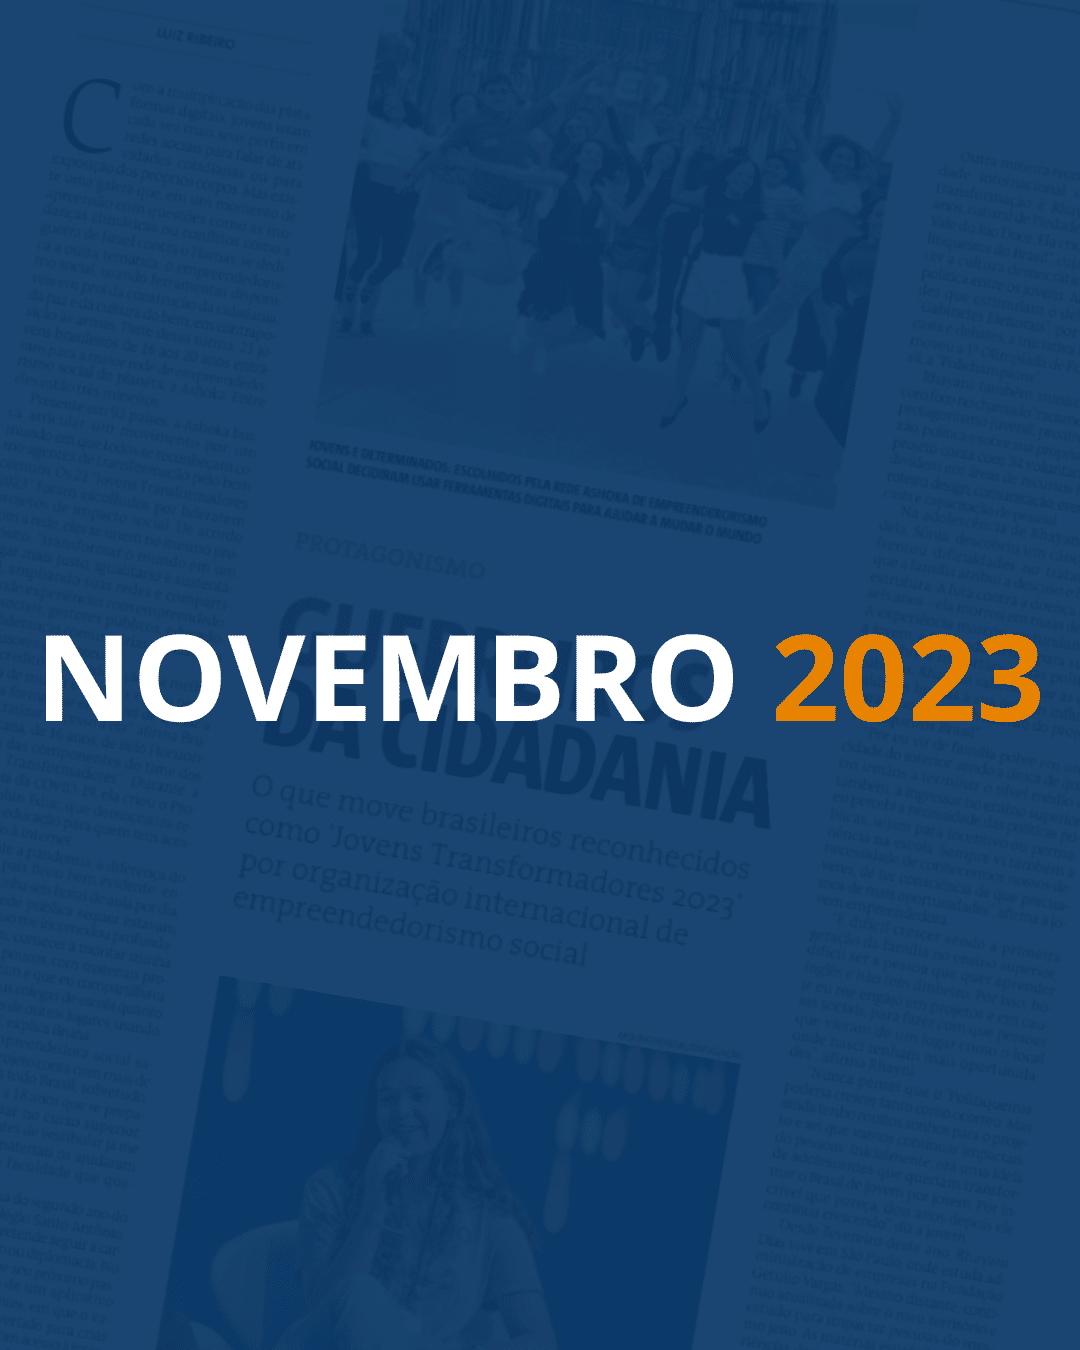 Fundo com uma página de jornal e um filtro azul escuro por cima. Em destaque, lê-se "NOVEMBRO" em branco e "2023" em laranja